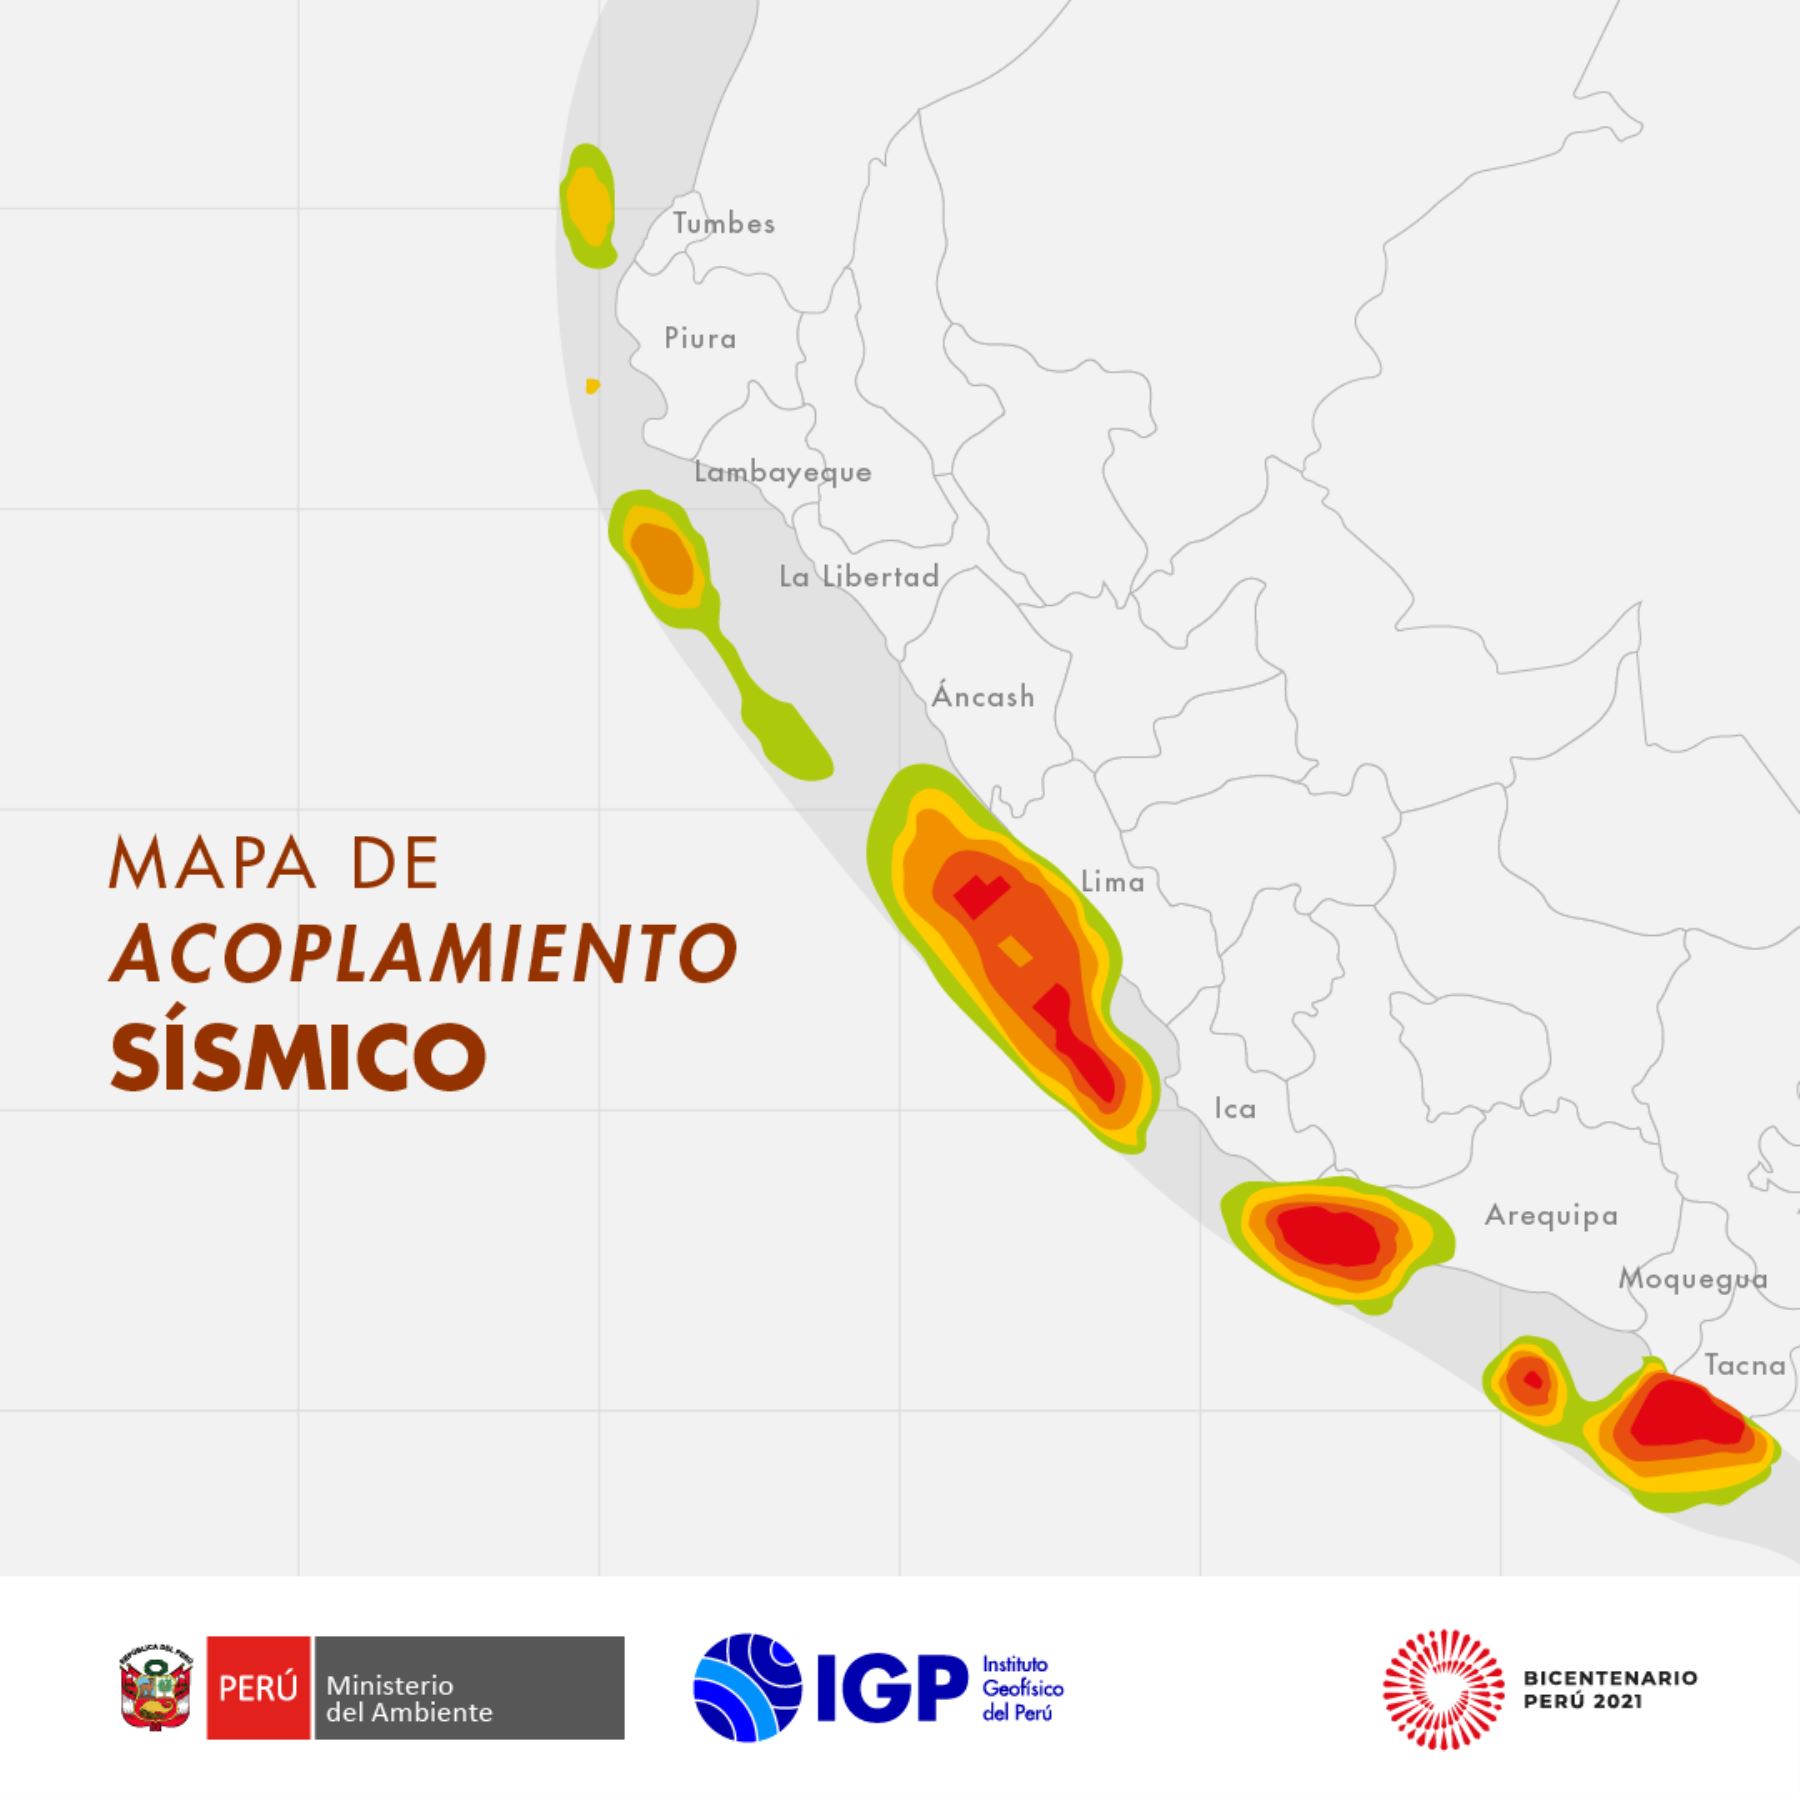 El Mapa de acoplamiento sísmico muestra las áreas del país donde, en el futuro, la energía se liberará con sismos de gran magnitud. | IGP